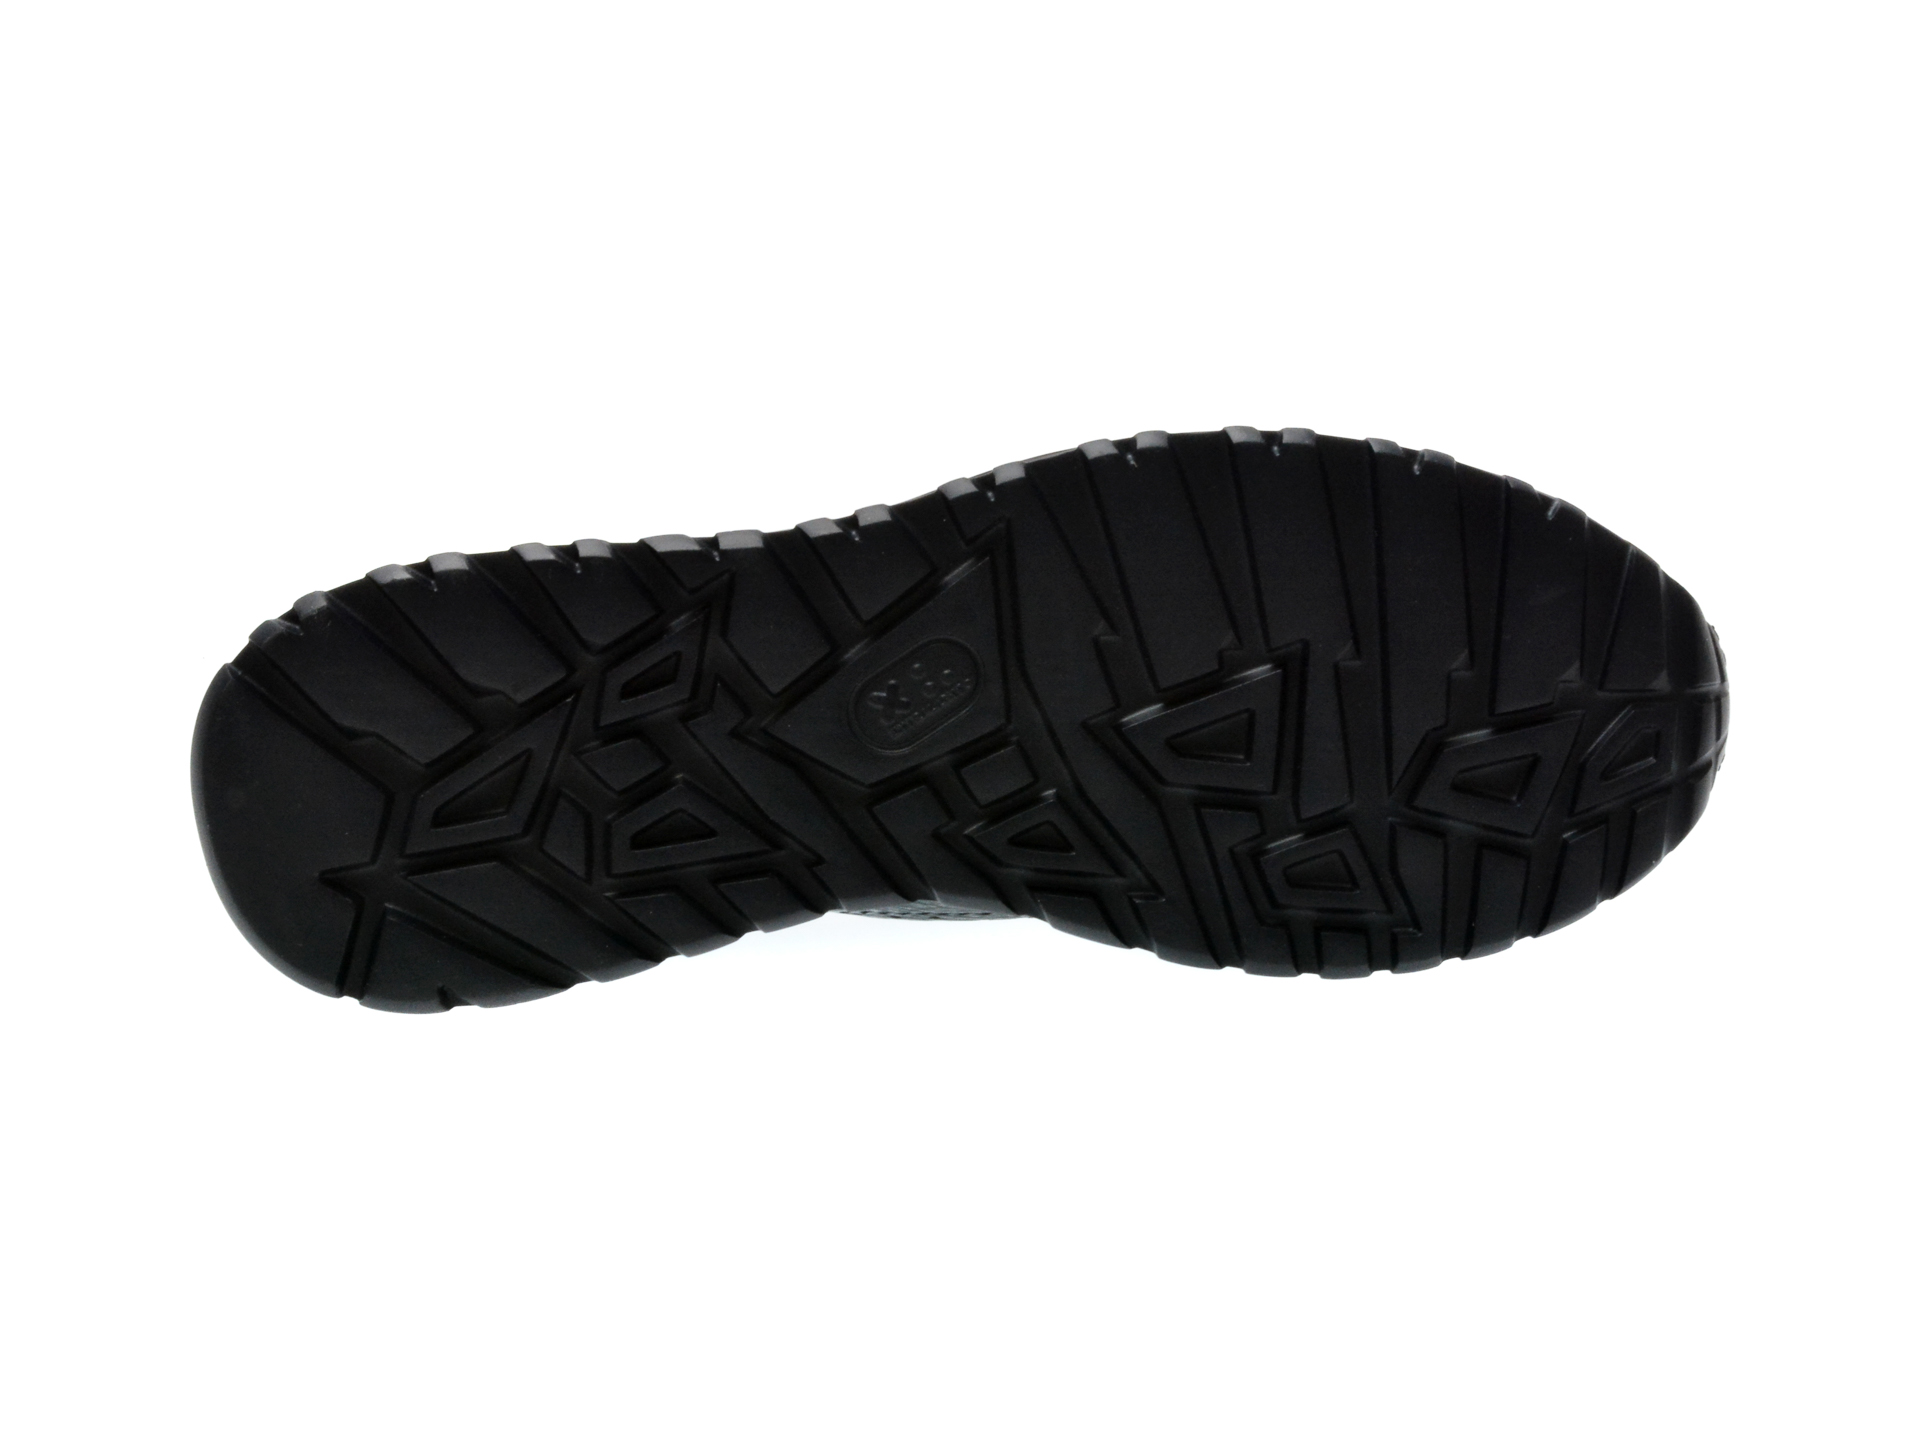 Pantofi casual LE COLONEL verzi, 48901, din piele naturala